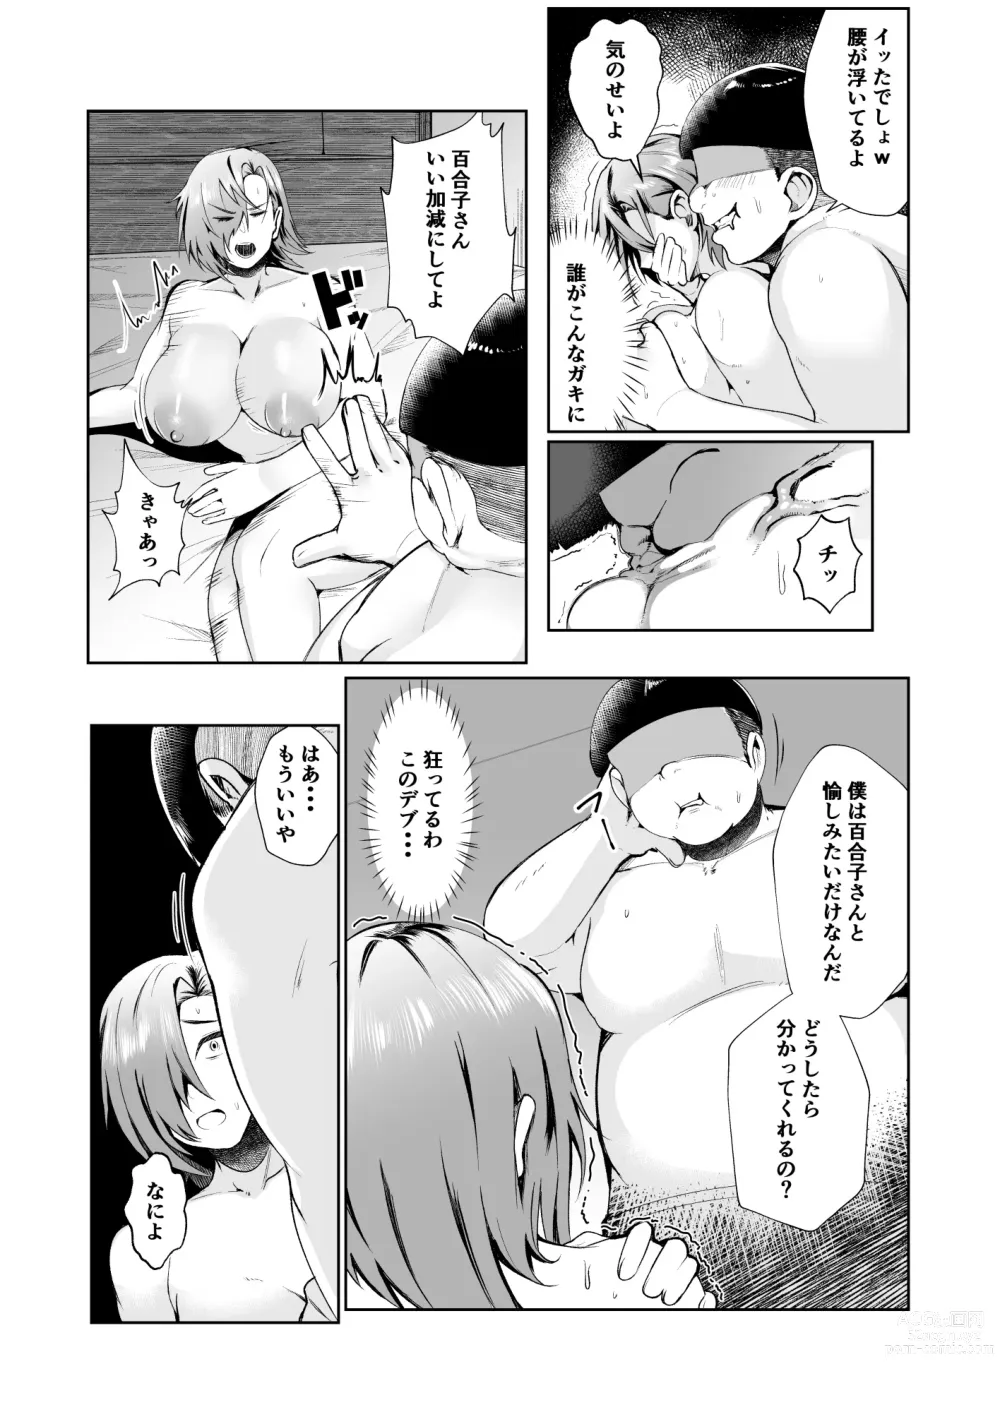 Page 12 of doujinshi Ojisanga shakinwo tsumano karadade hotenshitehoshiito iwaretanode kaidakushita hanashi